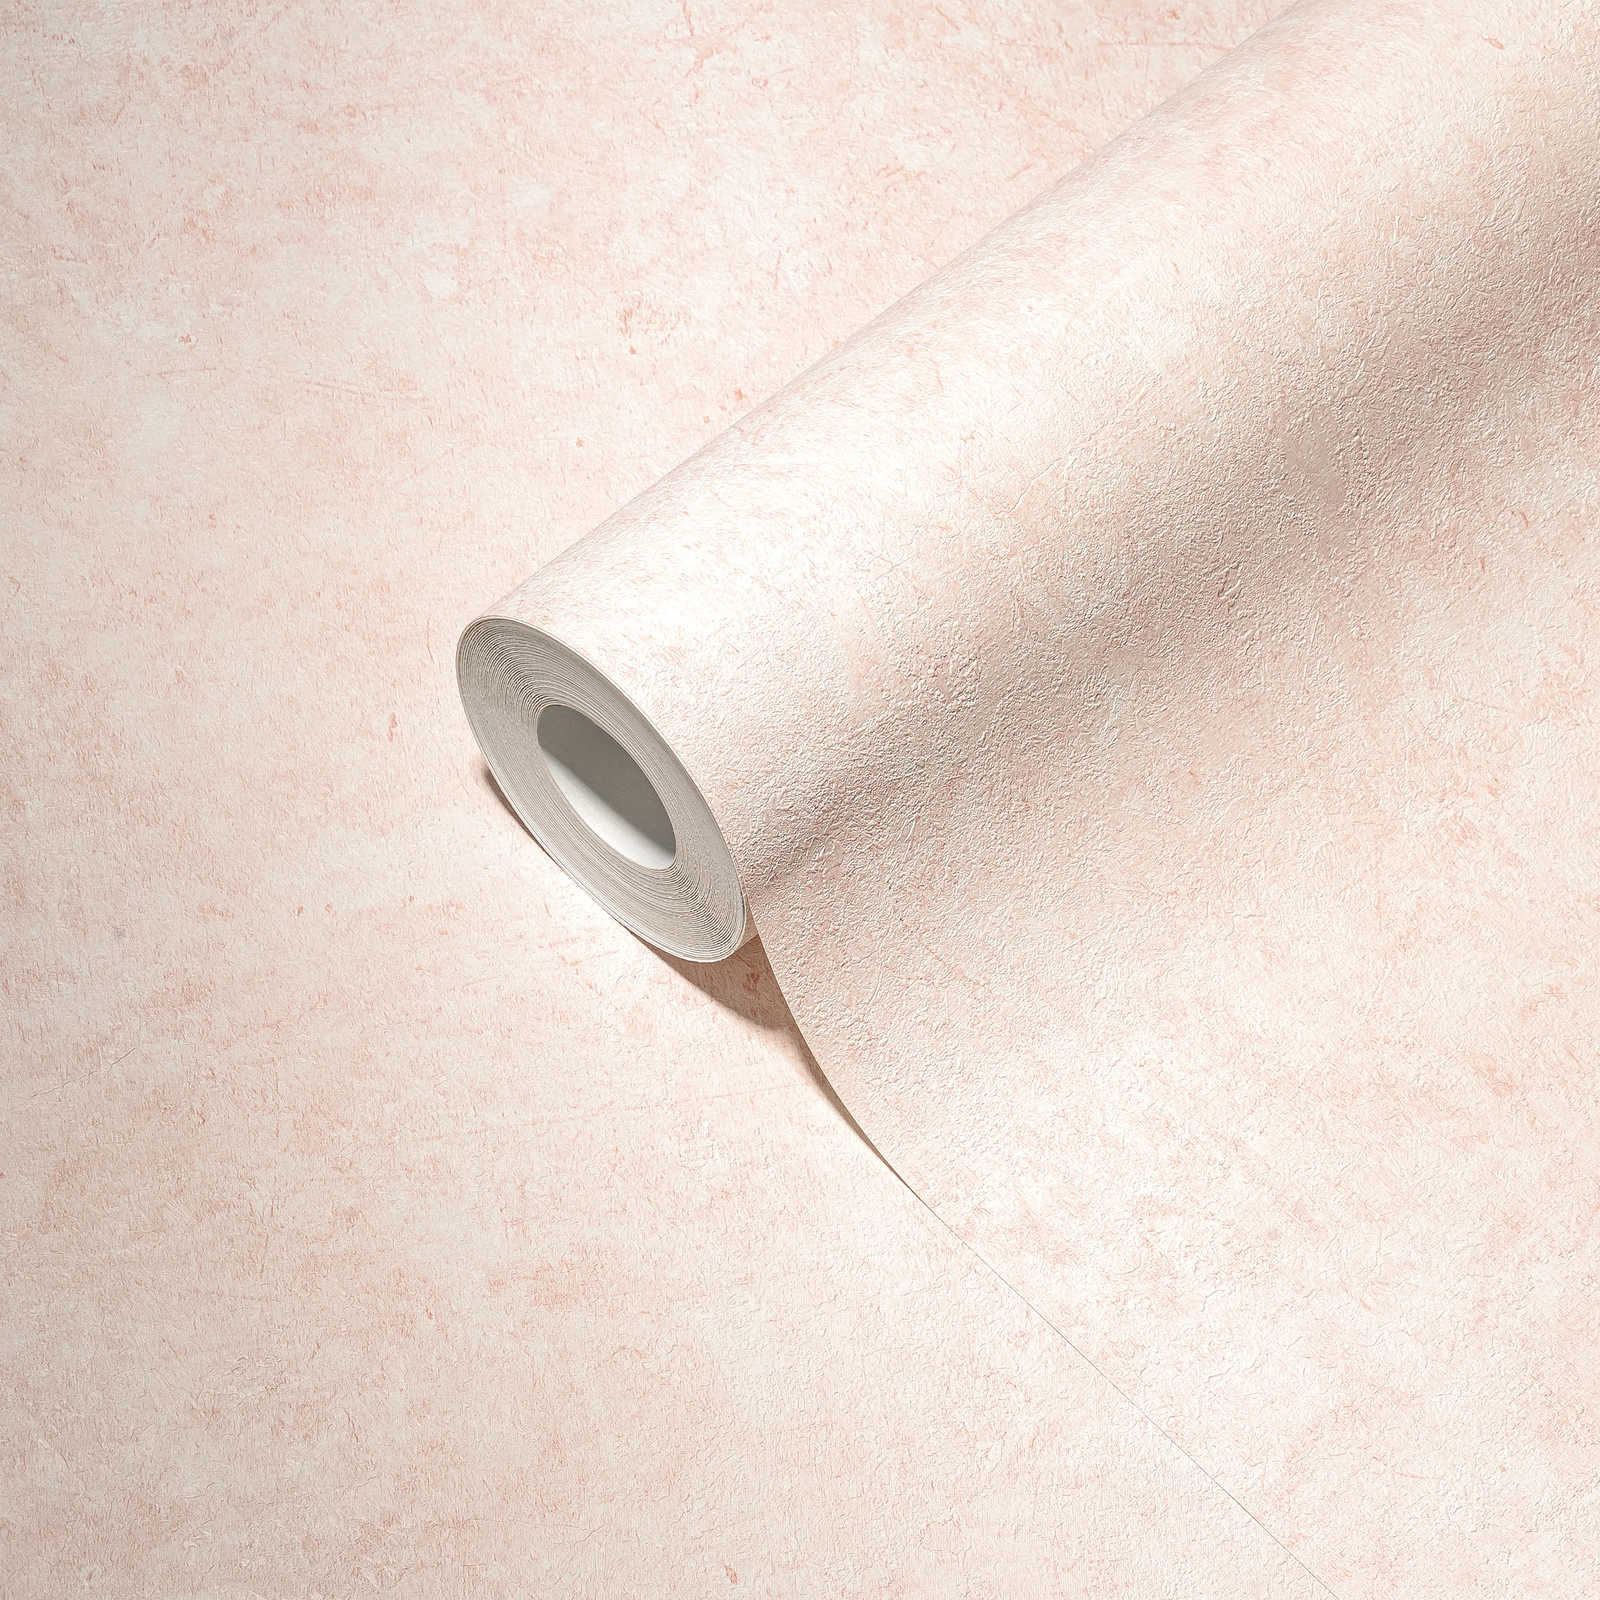             Einfarbige Tapete mit Strukturtapete in dezenter Farbe – Weiß, Rosa
        